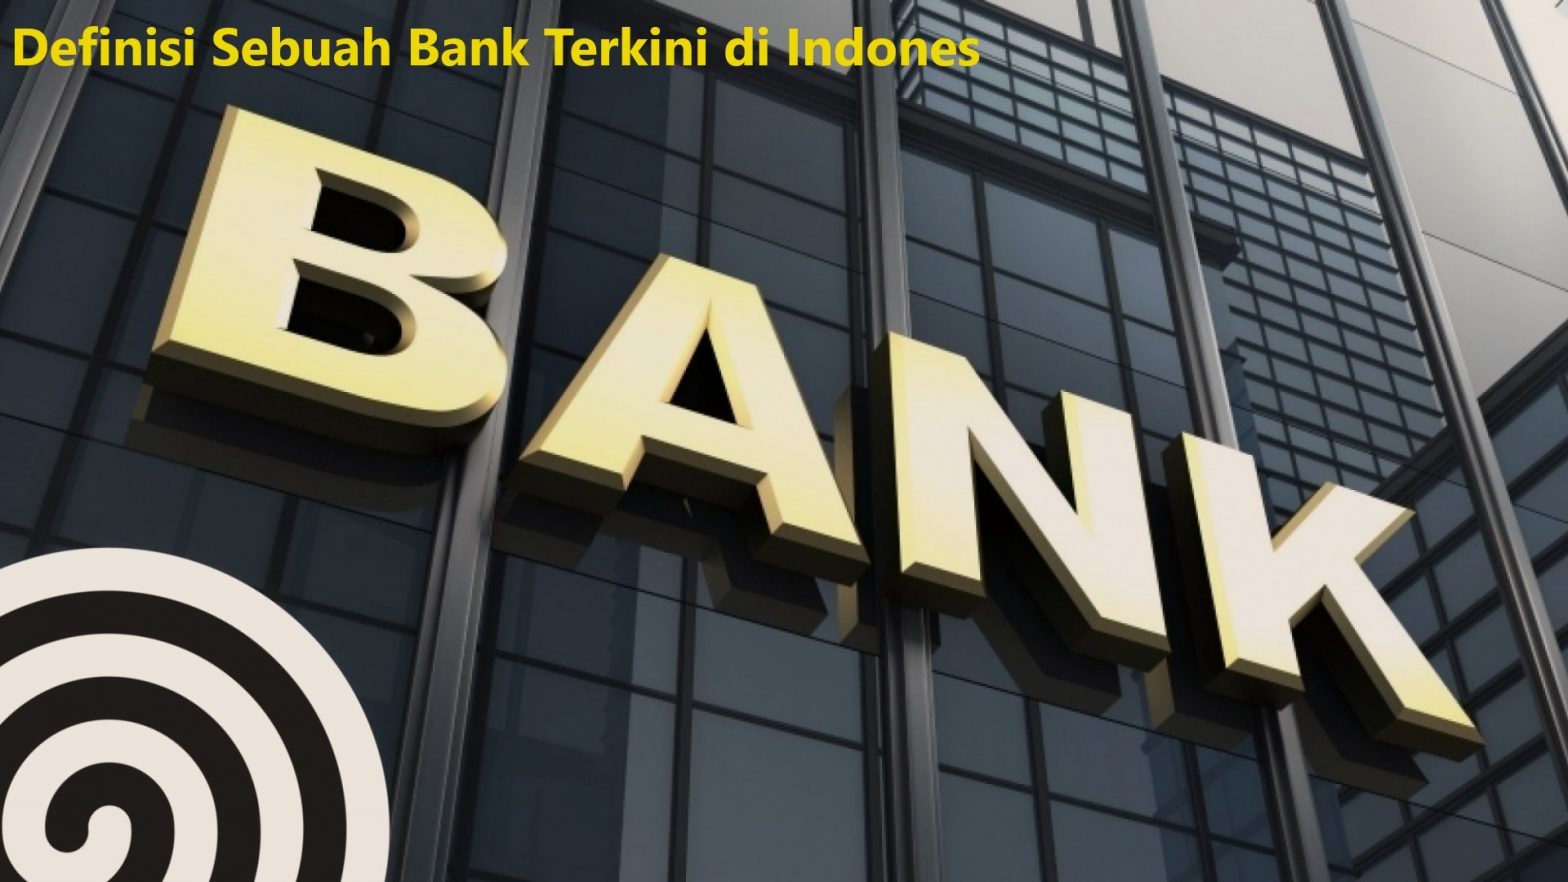 Definisi Sebuah Bank Terkini di Indonesia